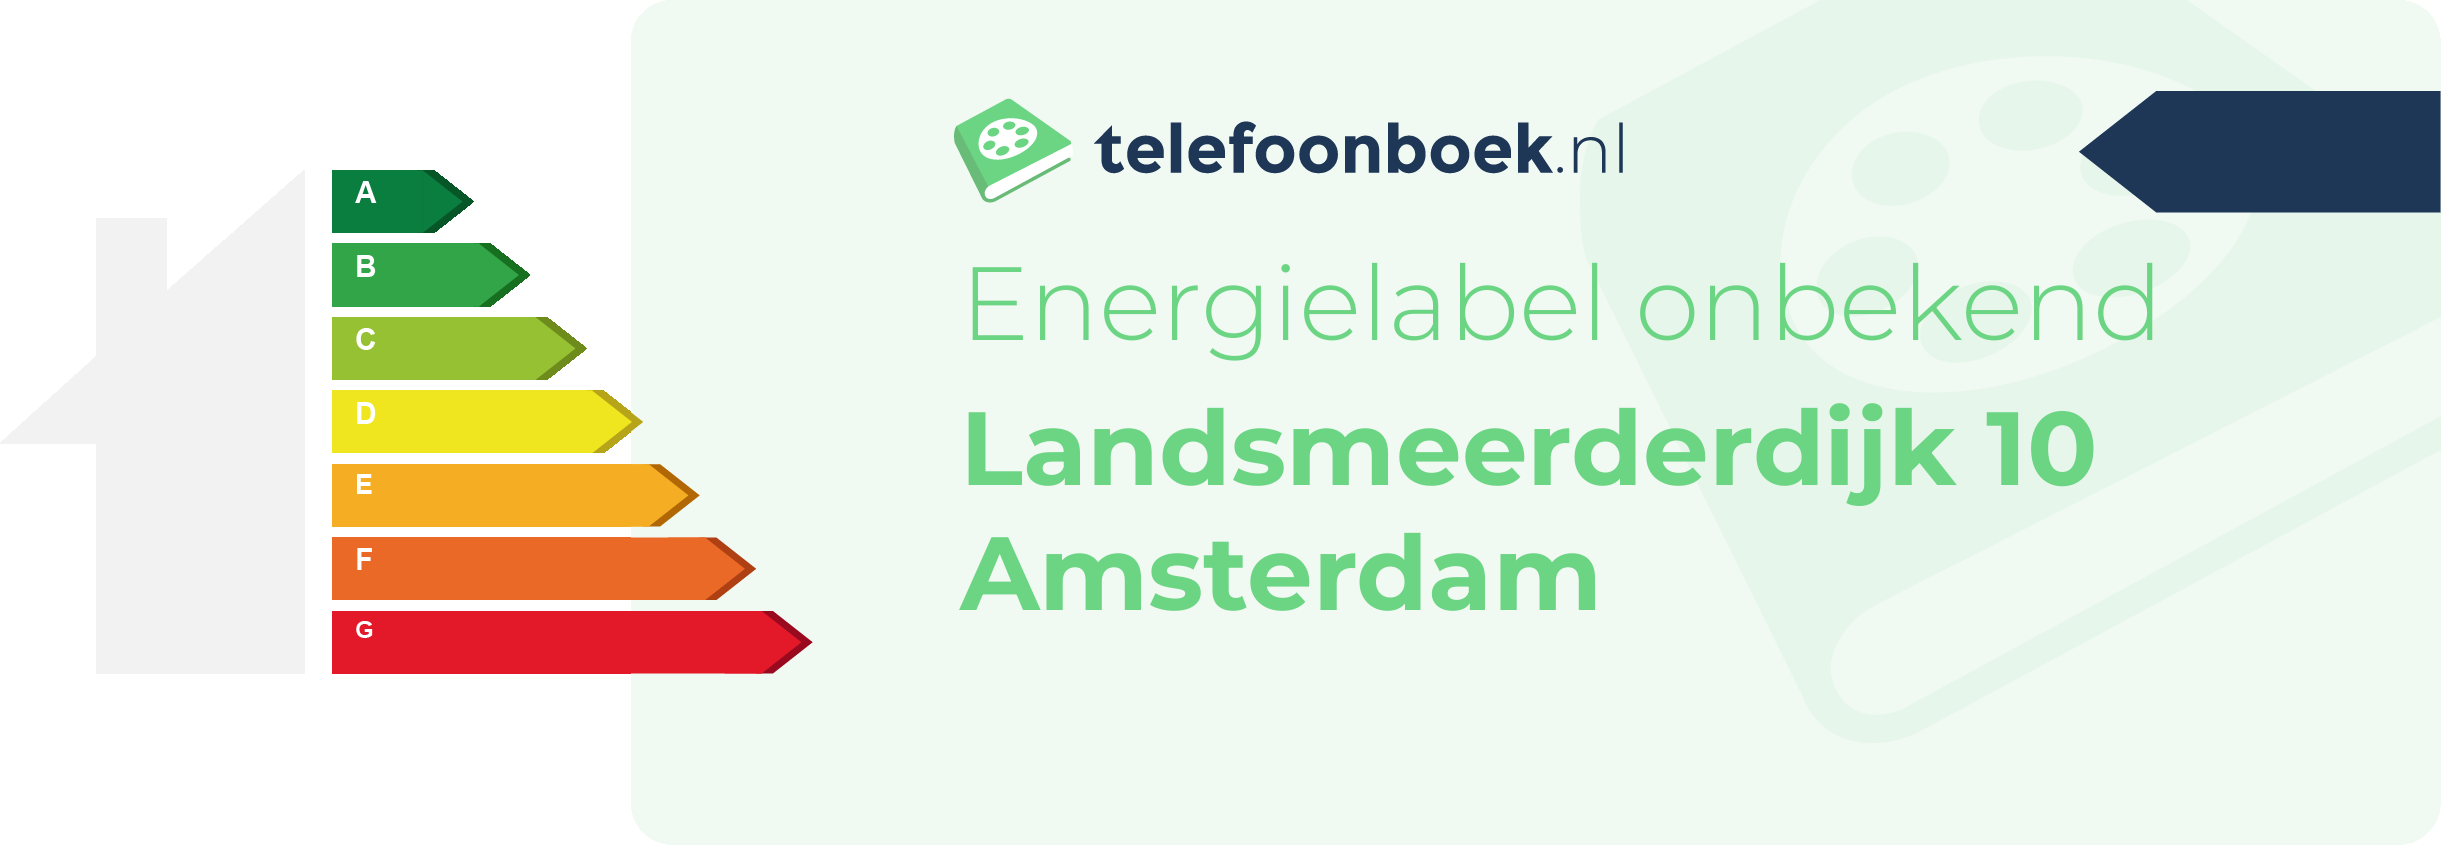 Energielabel Landsmeerderdijk 10 Amsterdam